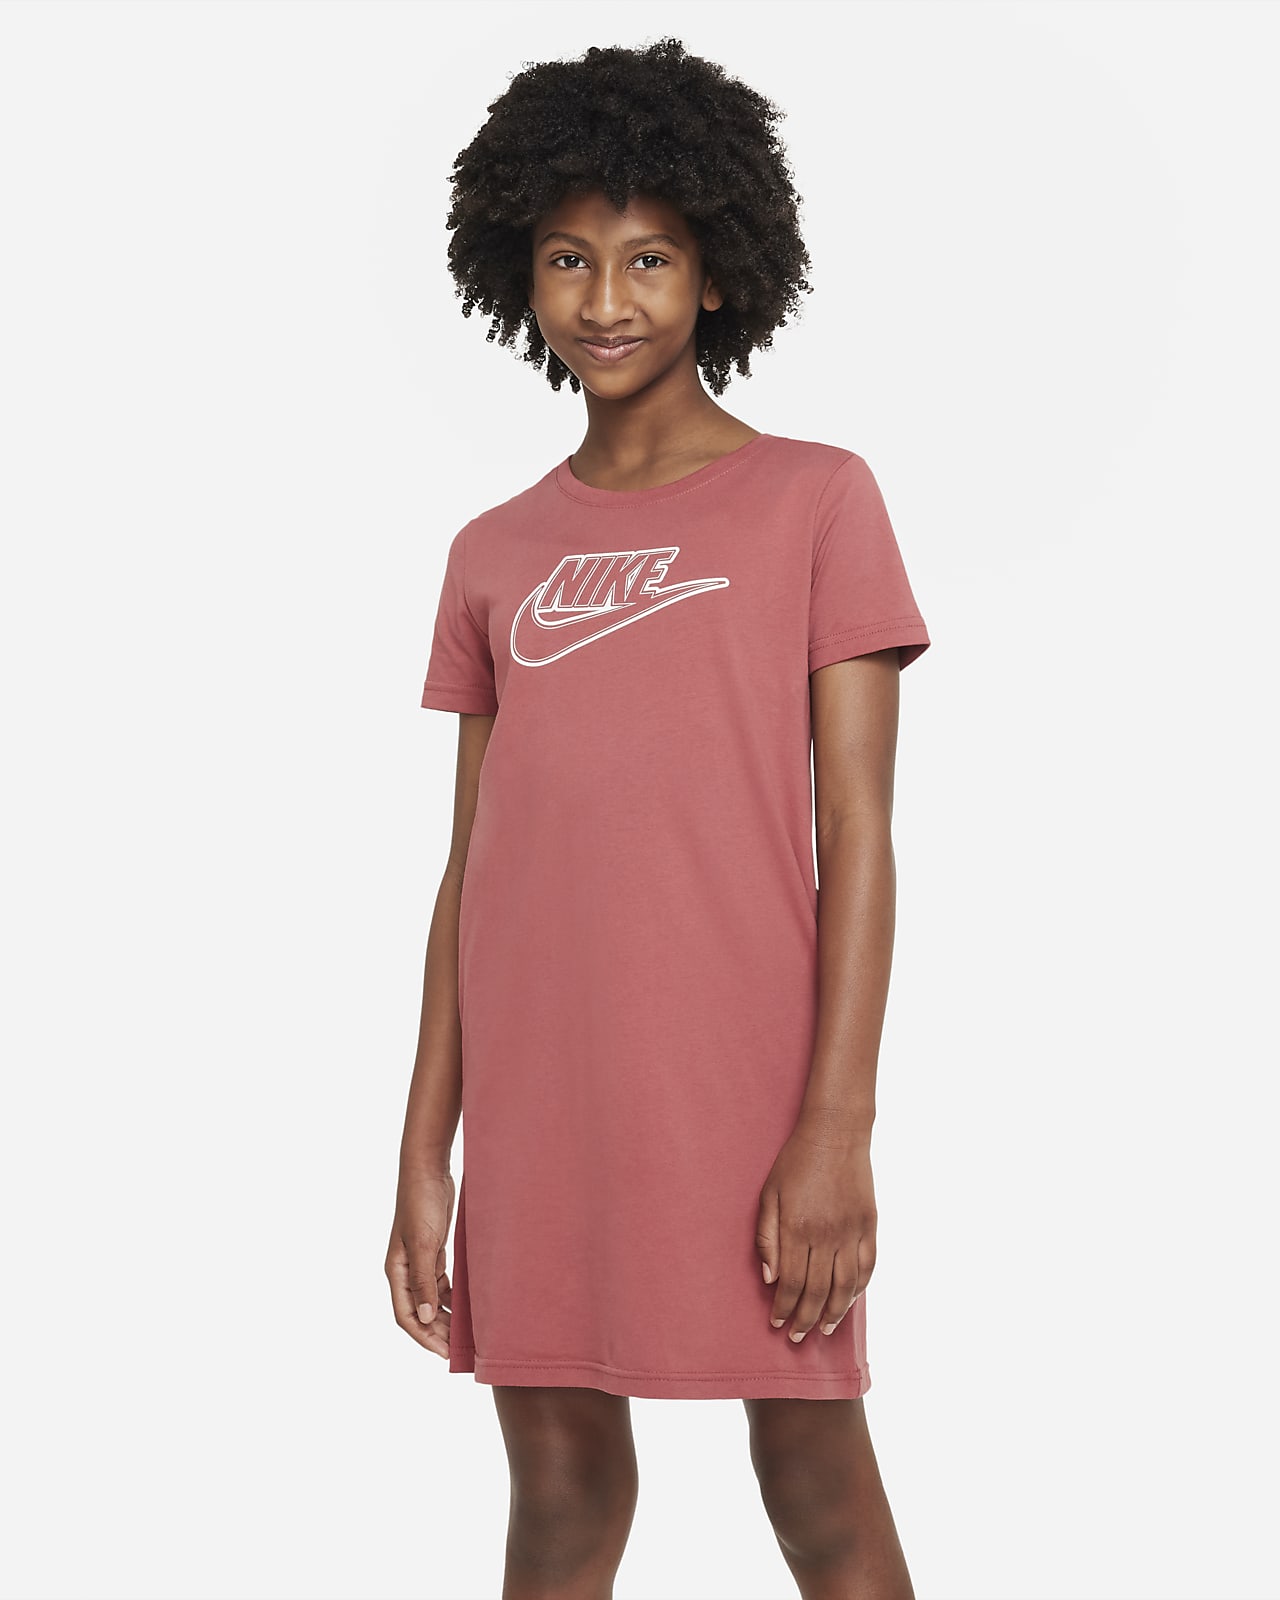 Conquistador excusa presentación Nike Sportswear Vestido camiseta - Niña. Nike ES